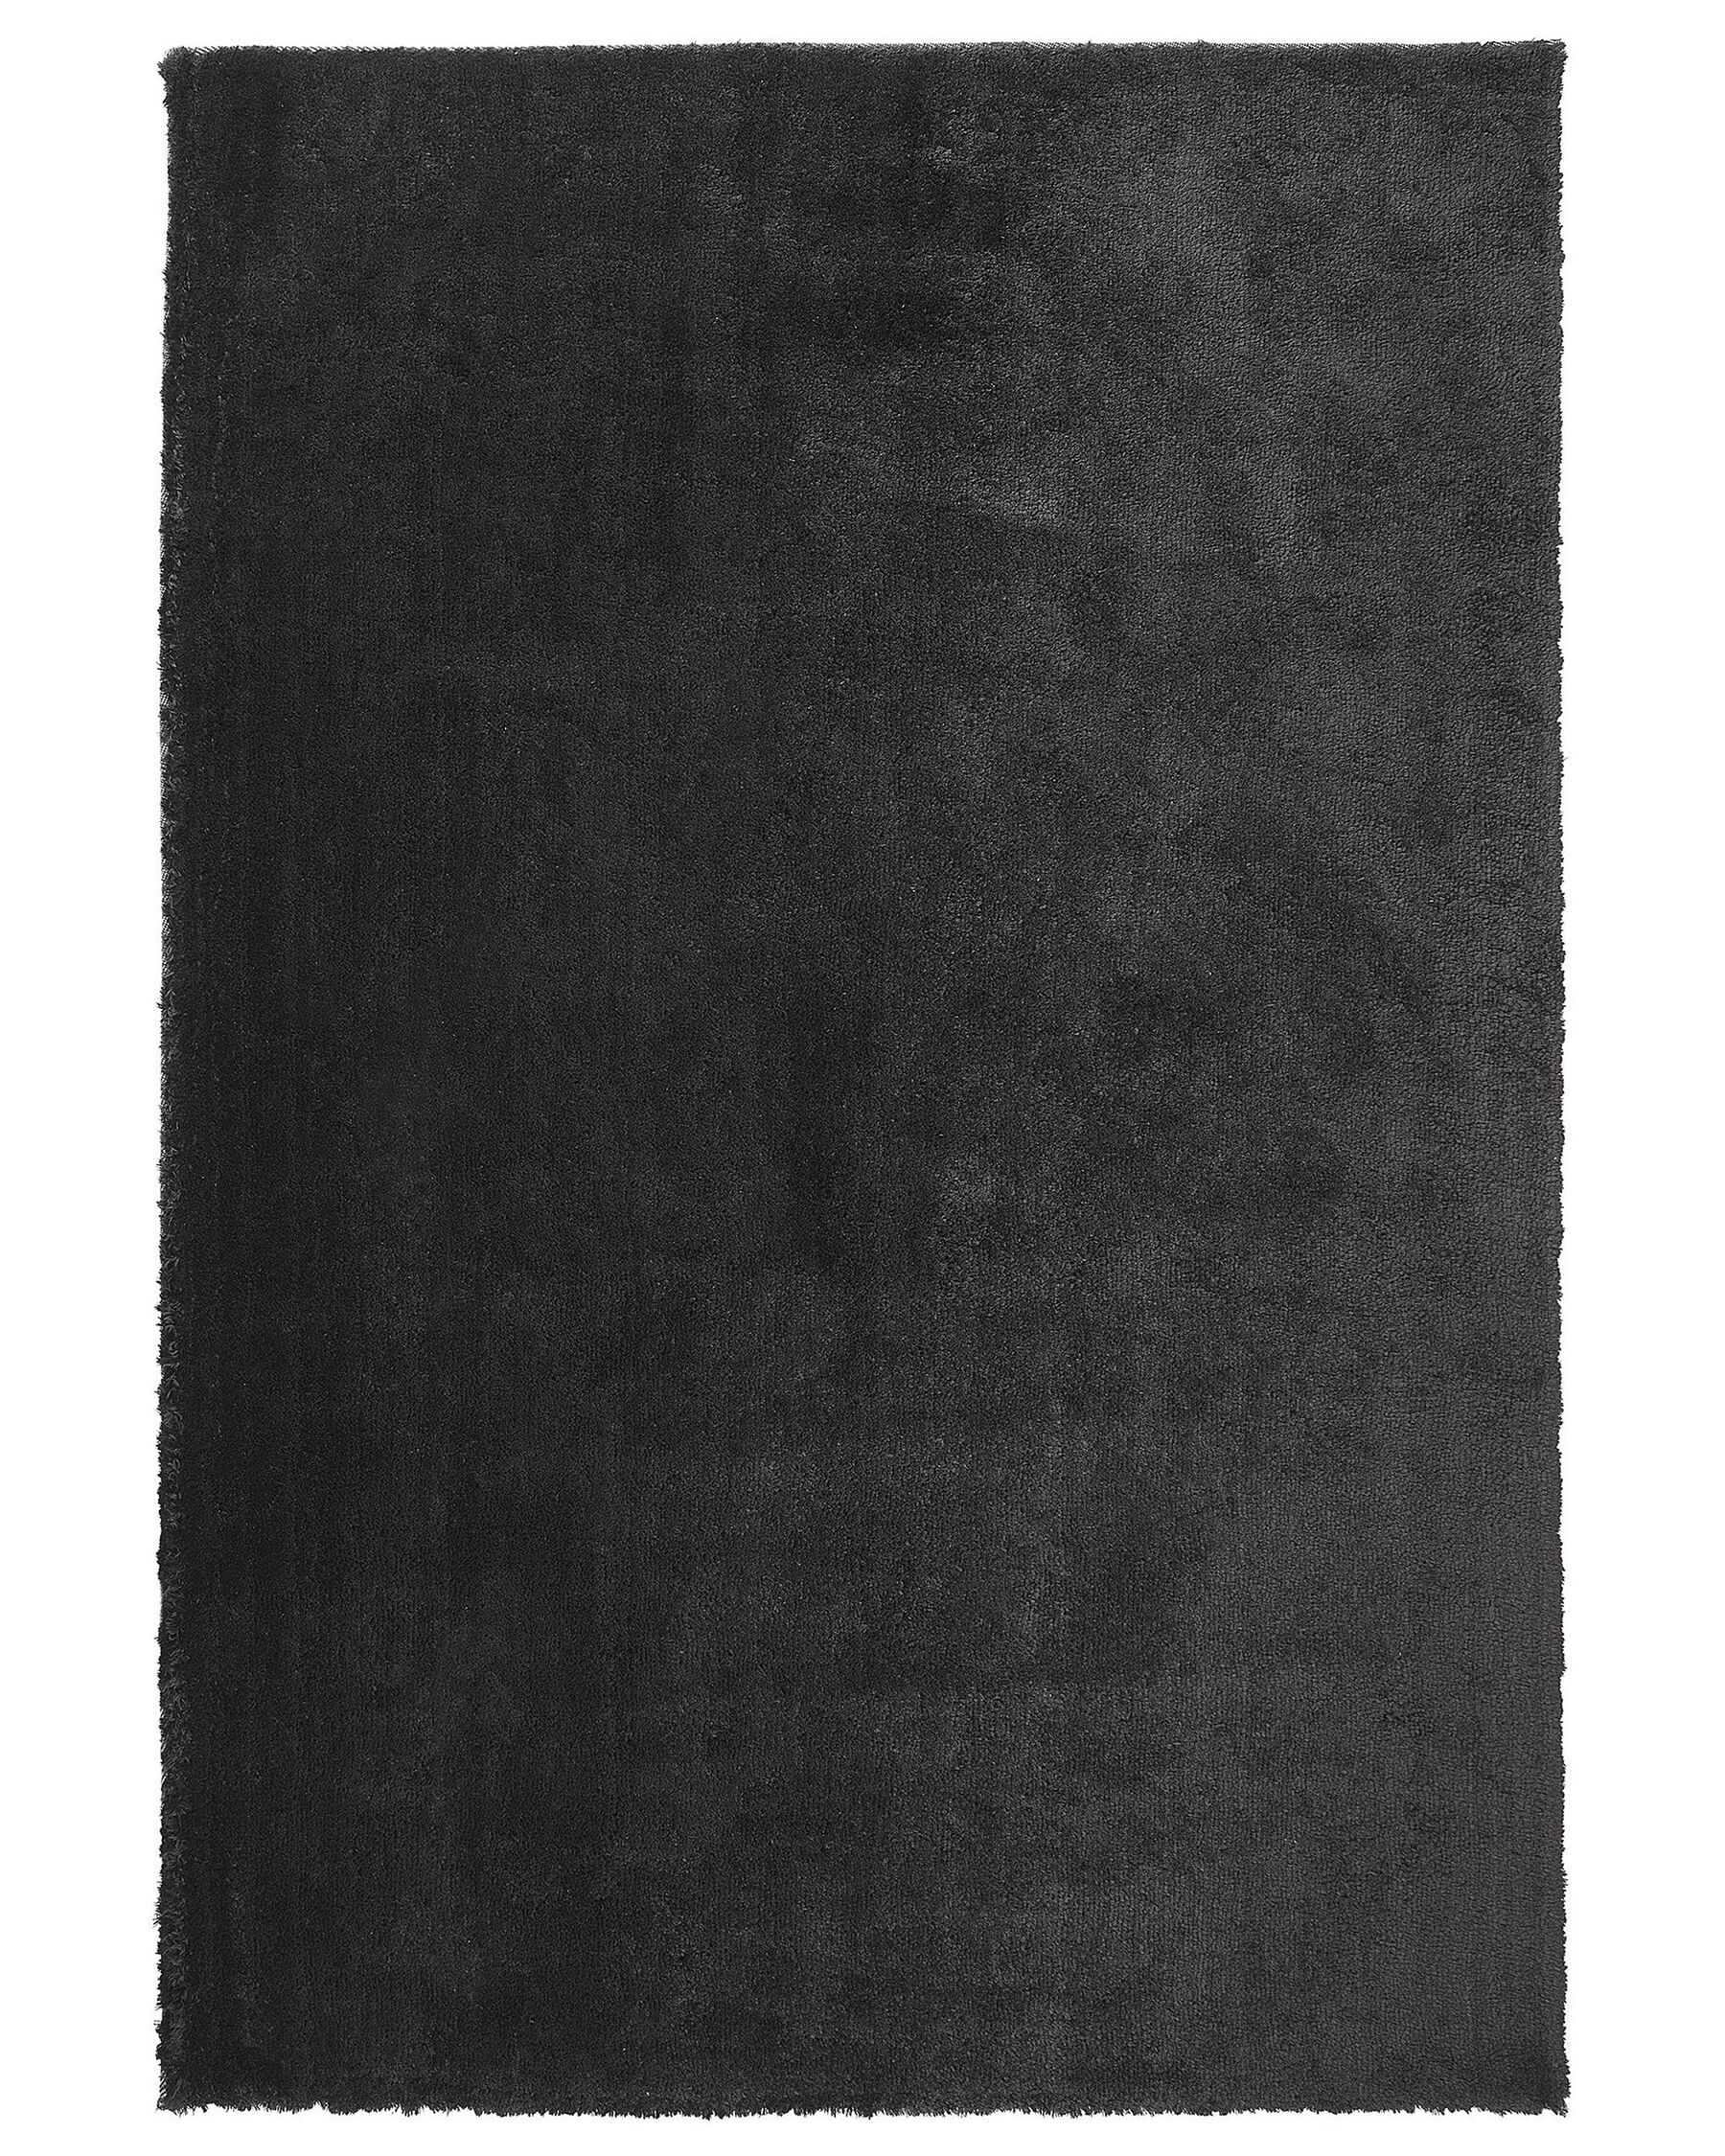 Teppich schwarz 200 x 300 cm Shaggy EVREN_758552